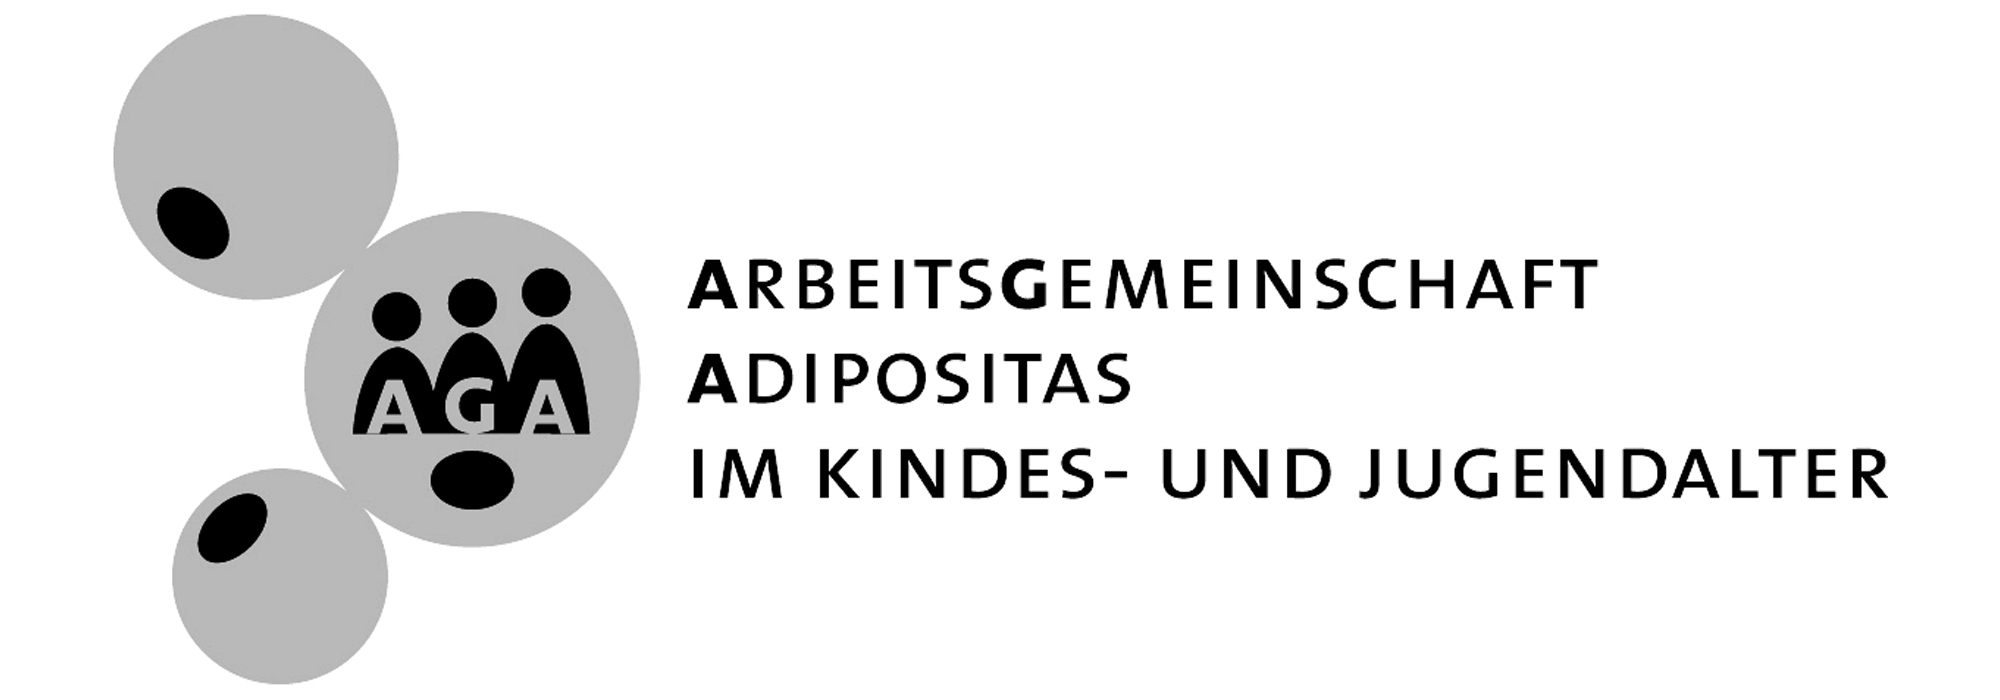 Arbeitsgemeinschaft Adipositas im Kindes- und Jugendalter (AGA) | Deutsche Adipositas-Gesellschaft e.V.